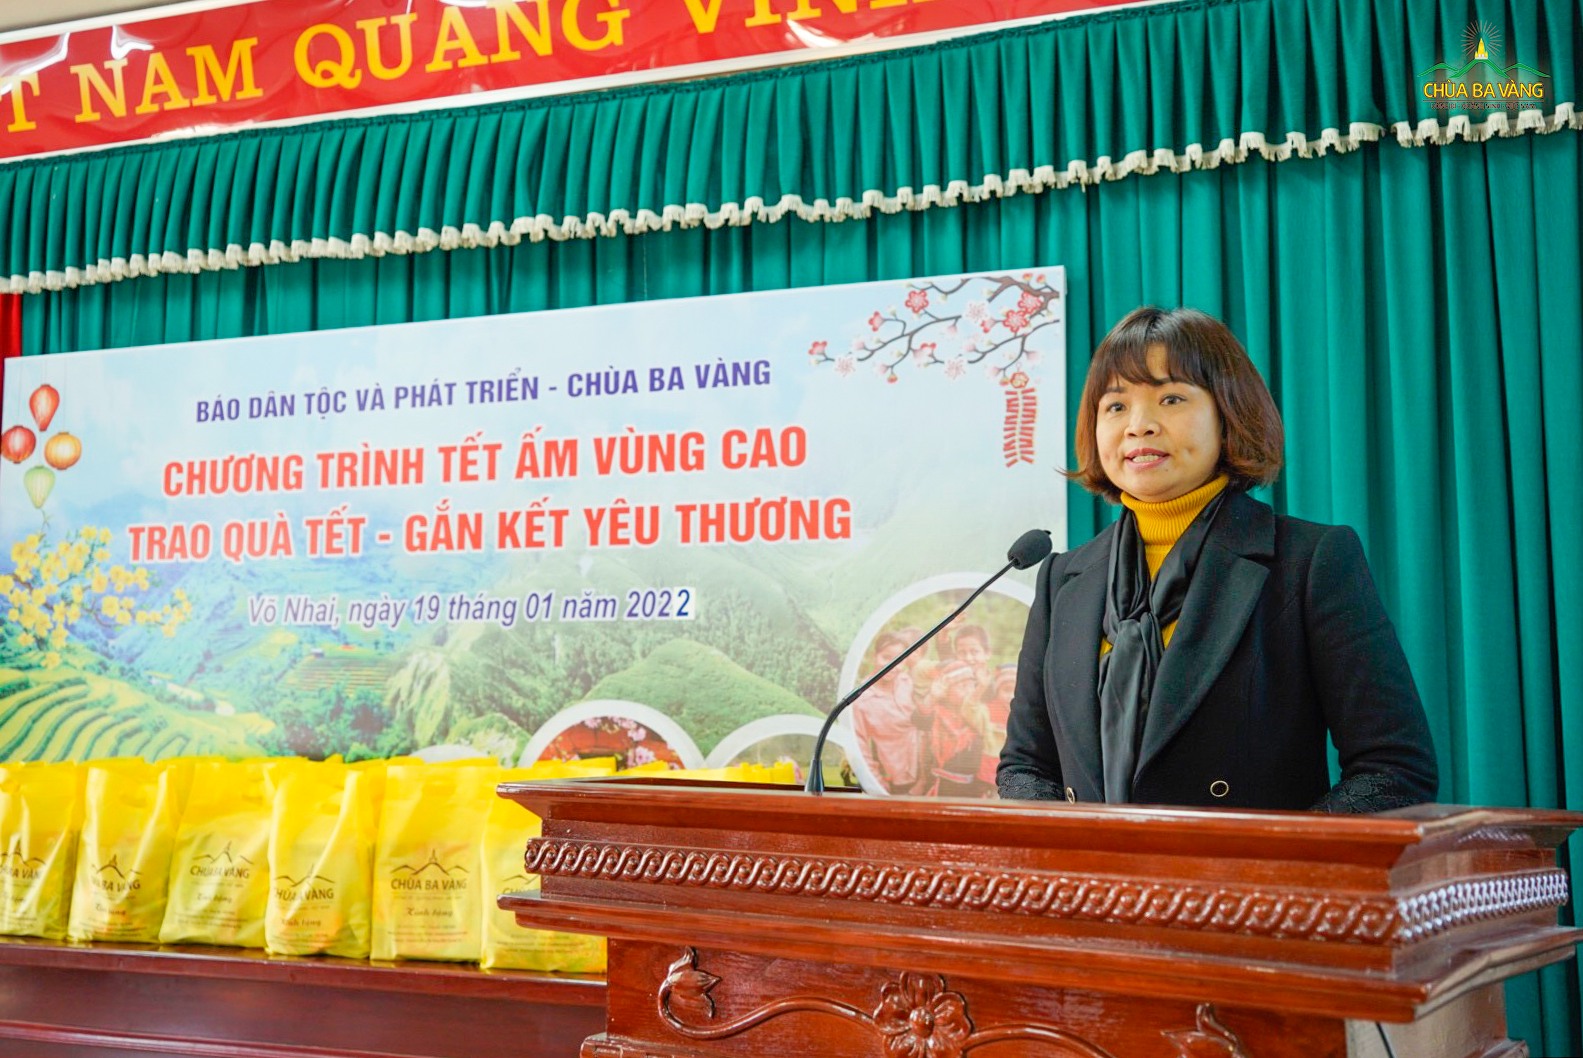 Bà Bùi Thị Hạ - Phó Tổng Biên tập báo Dâп тộс và Phát triển đánh giá cao hoạt động ý nghĩa này